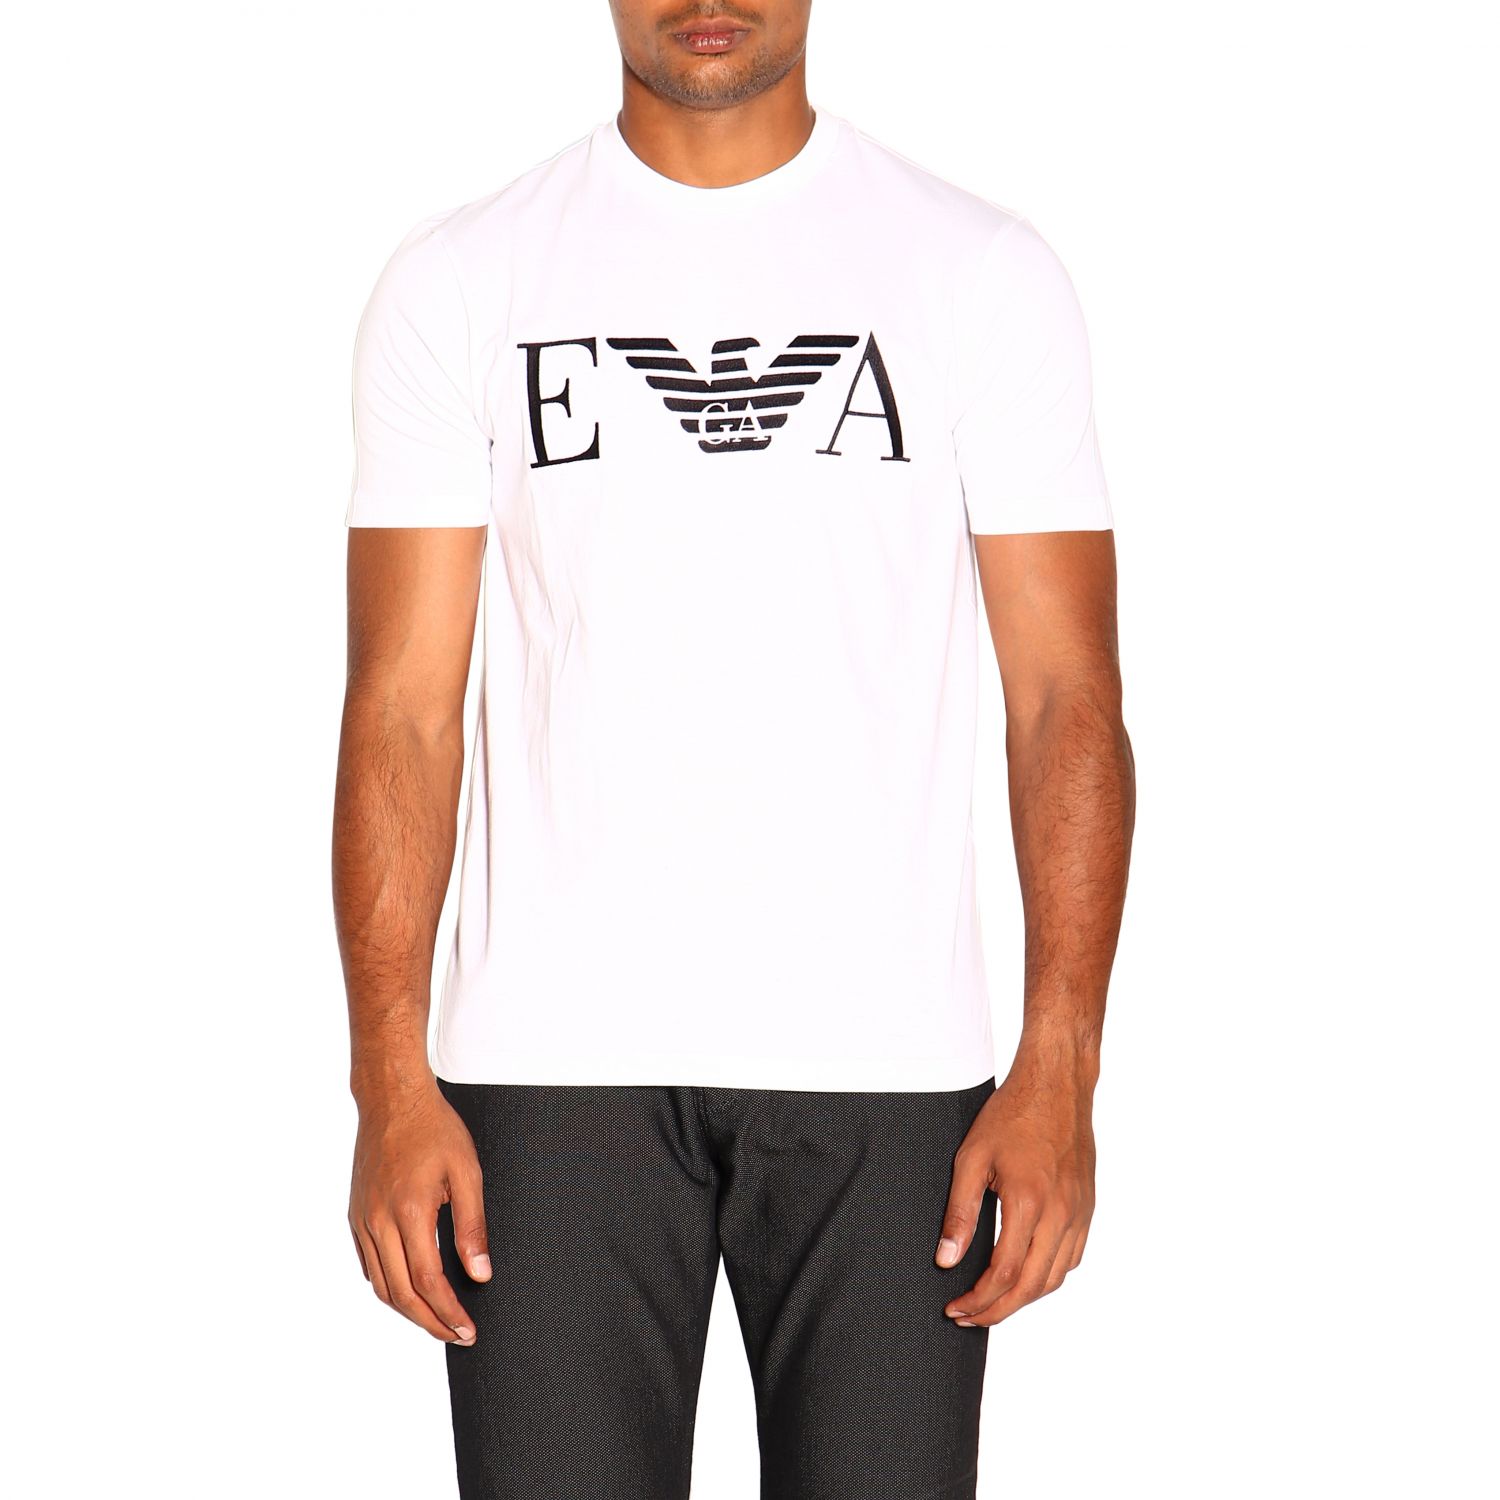 Emporio Armani Outlet: T-shirt men | T-Shirt Emporio Armani Men White ...